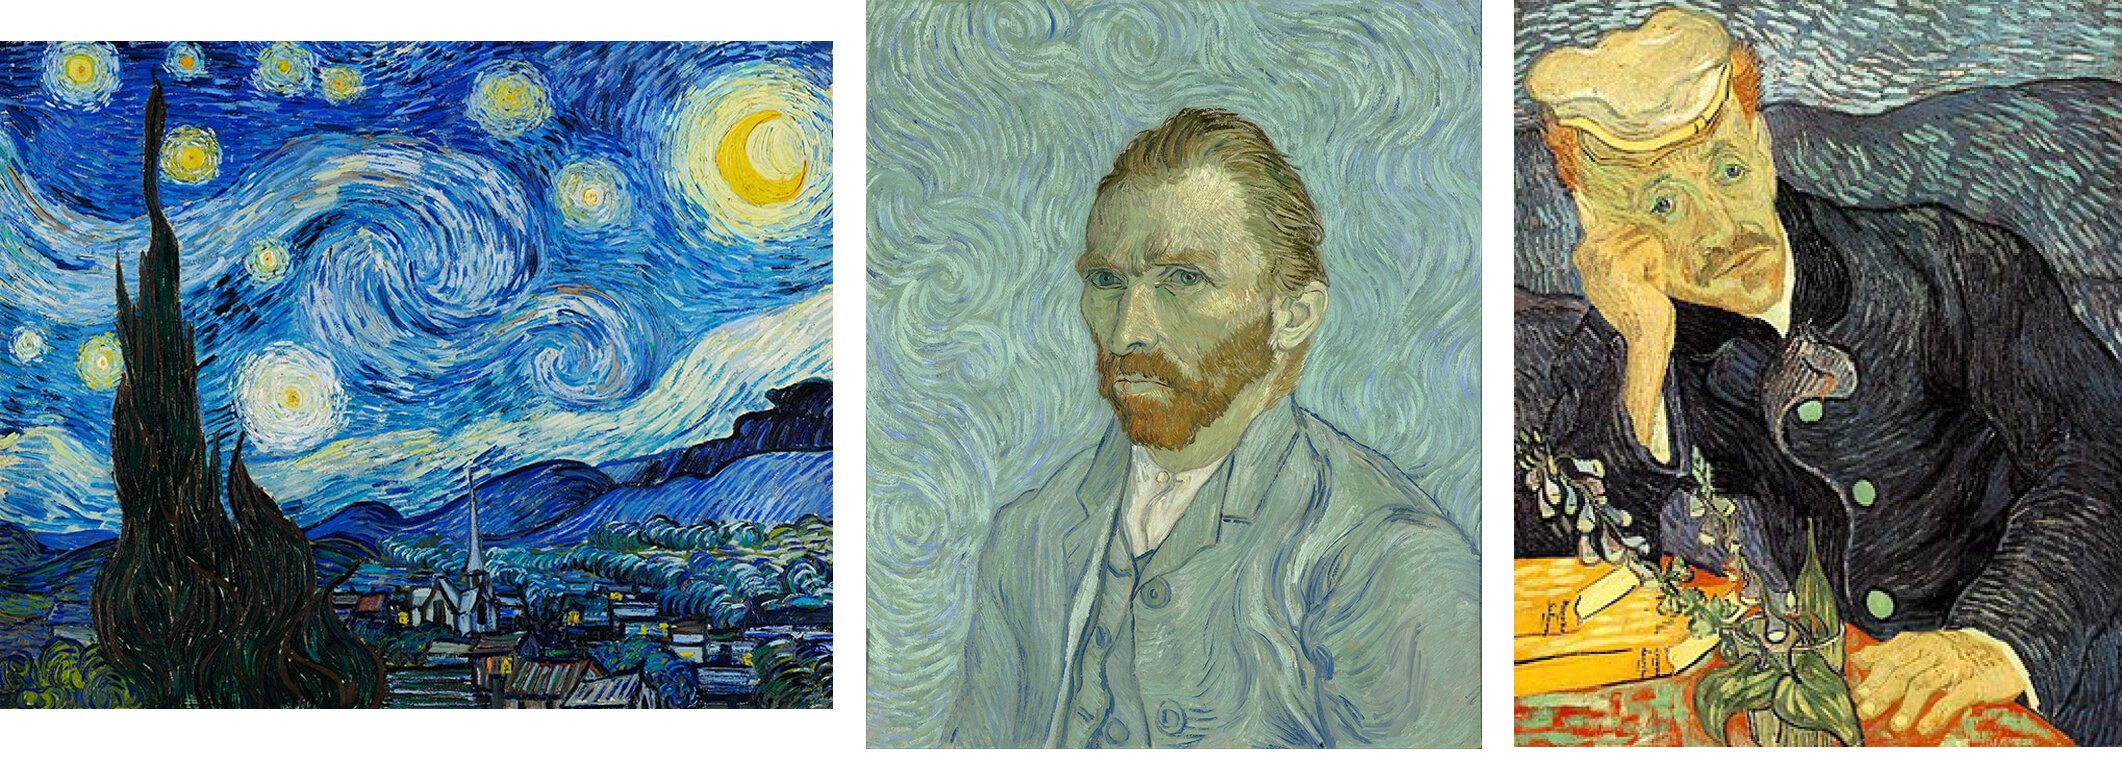 "Noapte instelata" - Van Gogh & "Autoportret" - Van Gogh & "Portretul doctorului Gachet" - Van Gogh